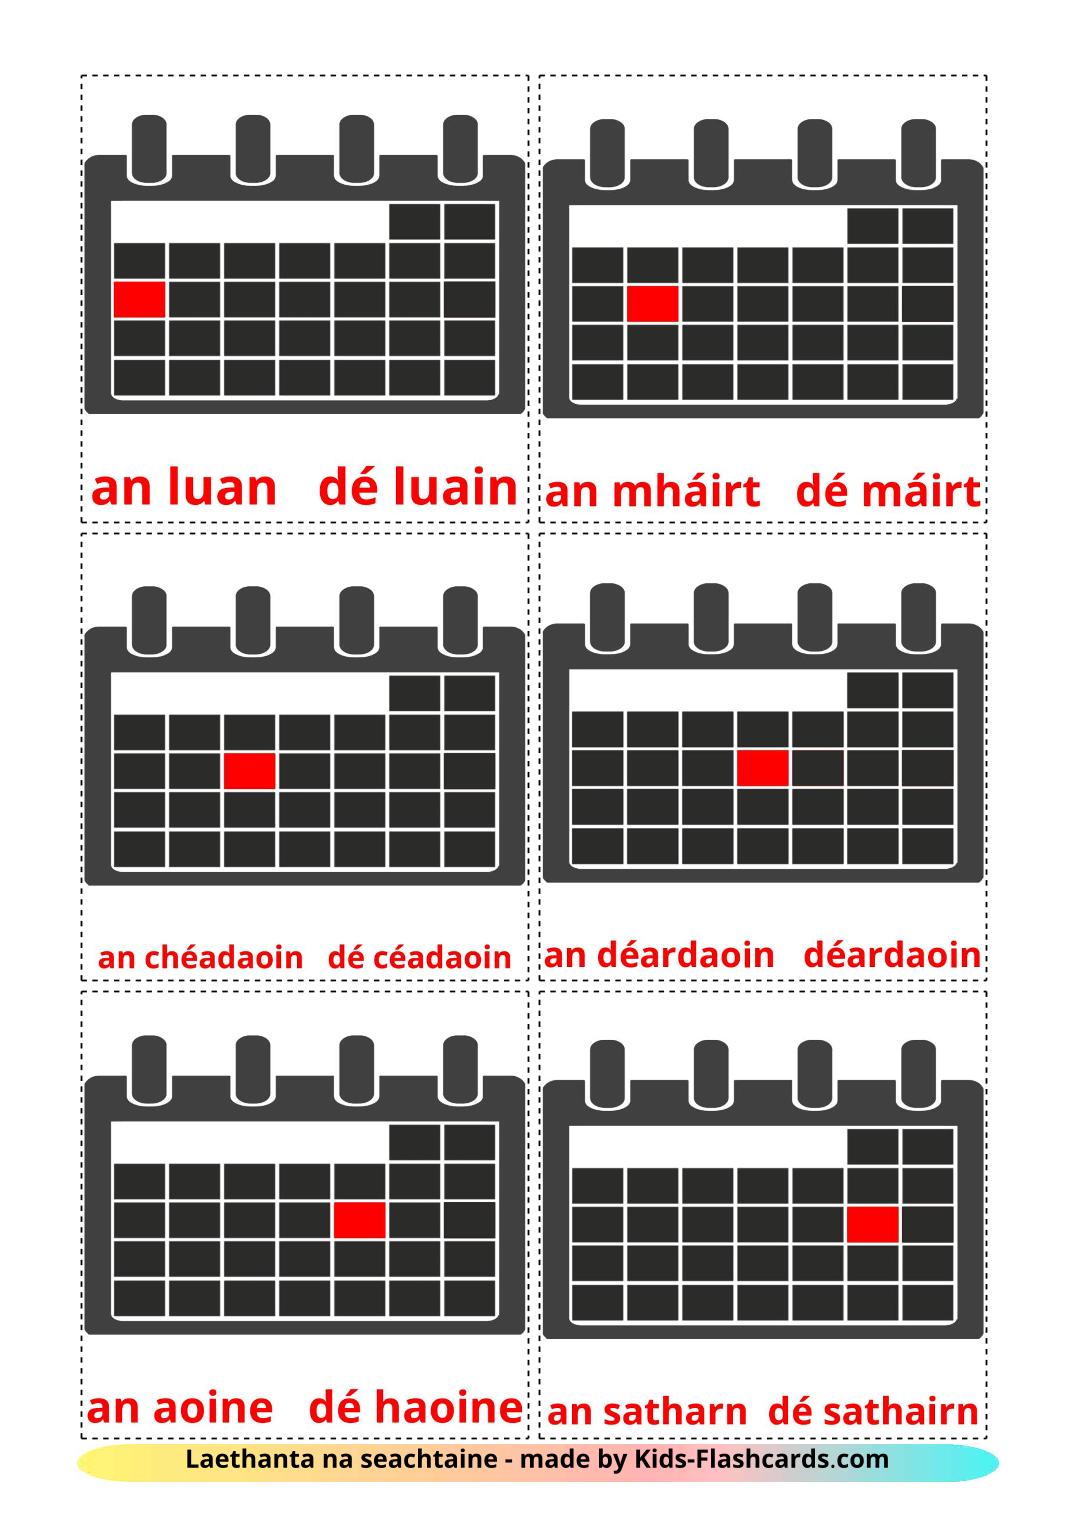 Les Jours de la Semaine - 12 Flashcards irlandais imprimables gratuitement